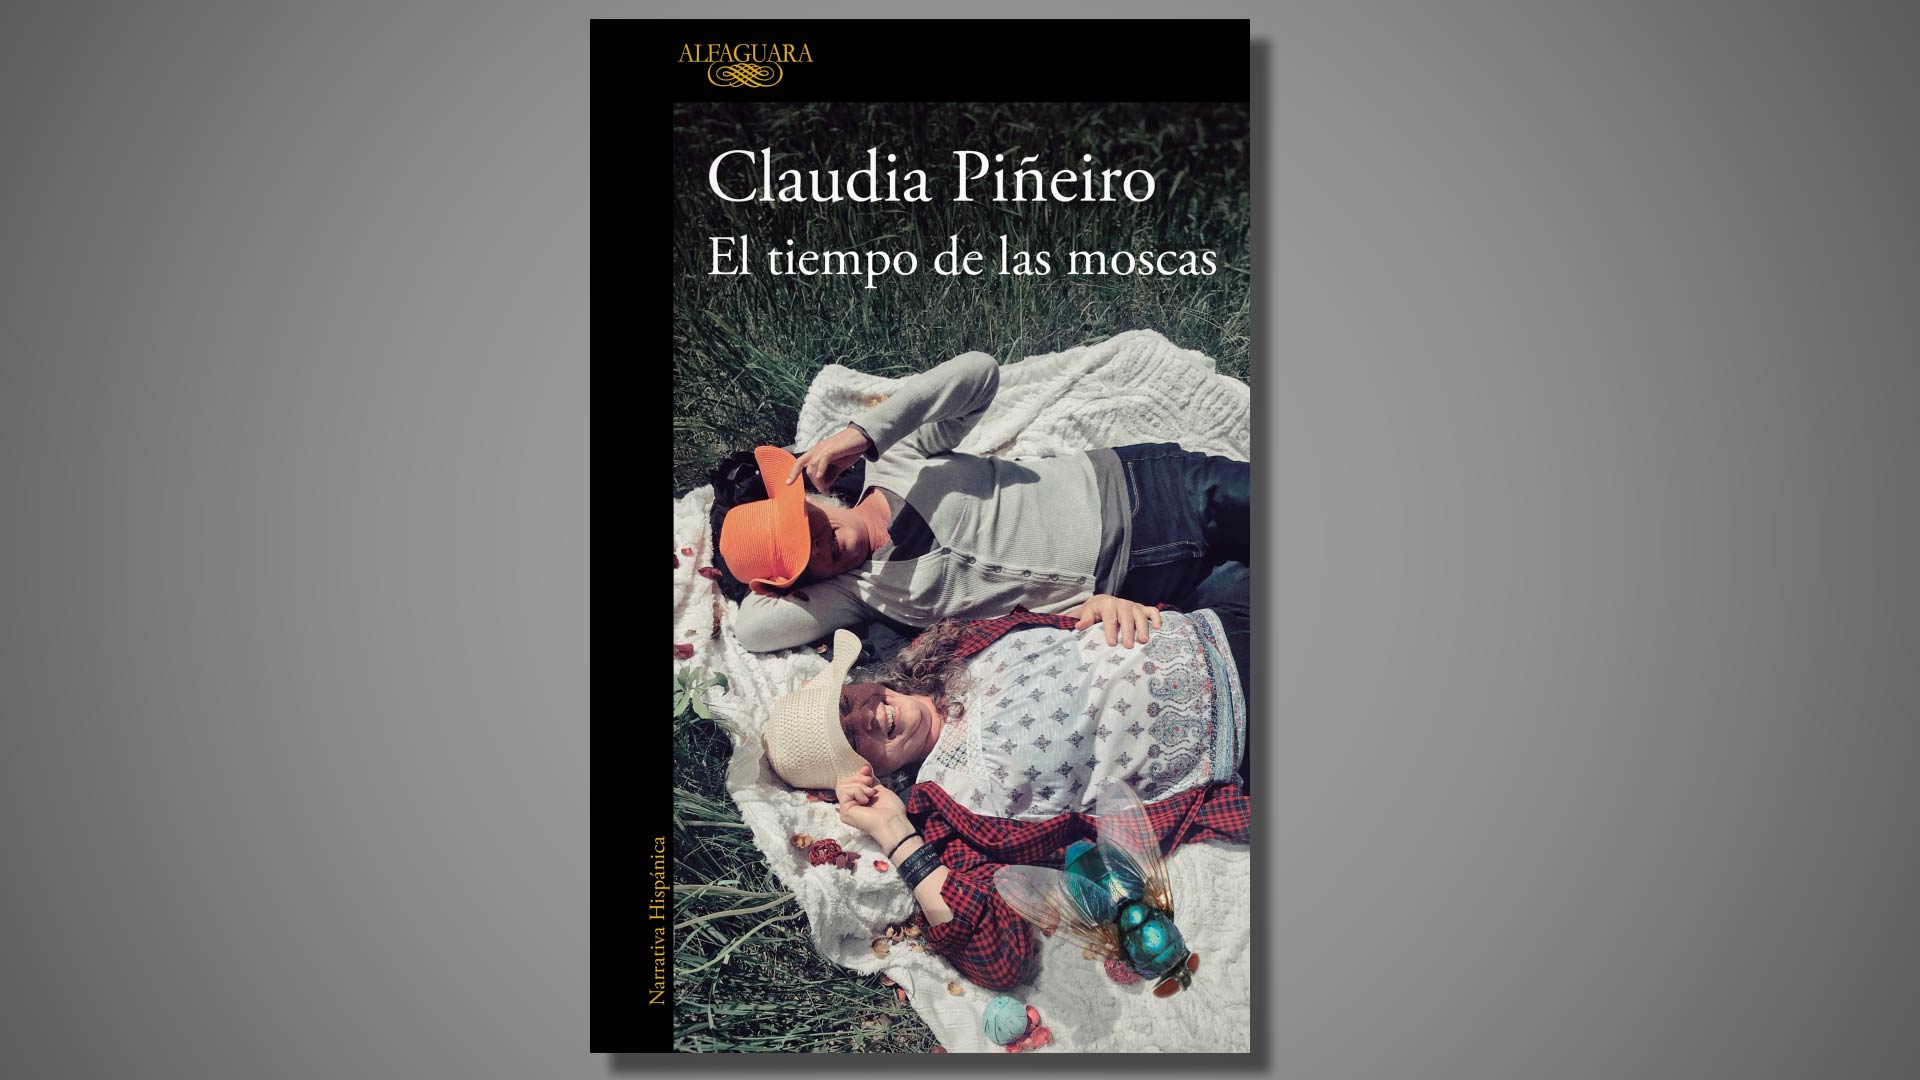 Así empieza la nueva novela de Claudia Piñeiro, “El tiempo de las moscas” |  Diario de Cultura